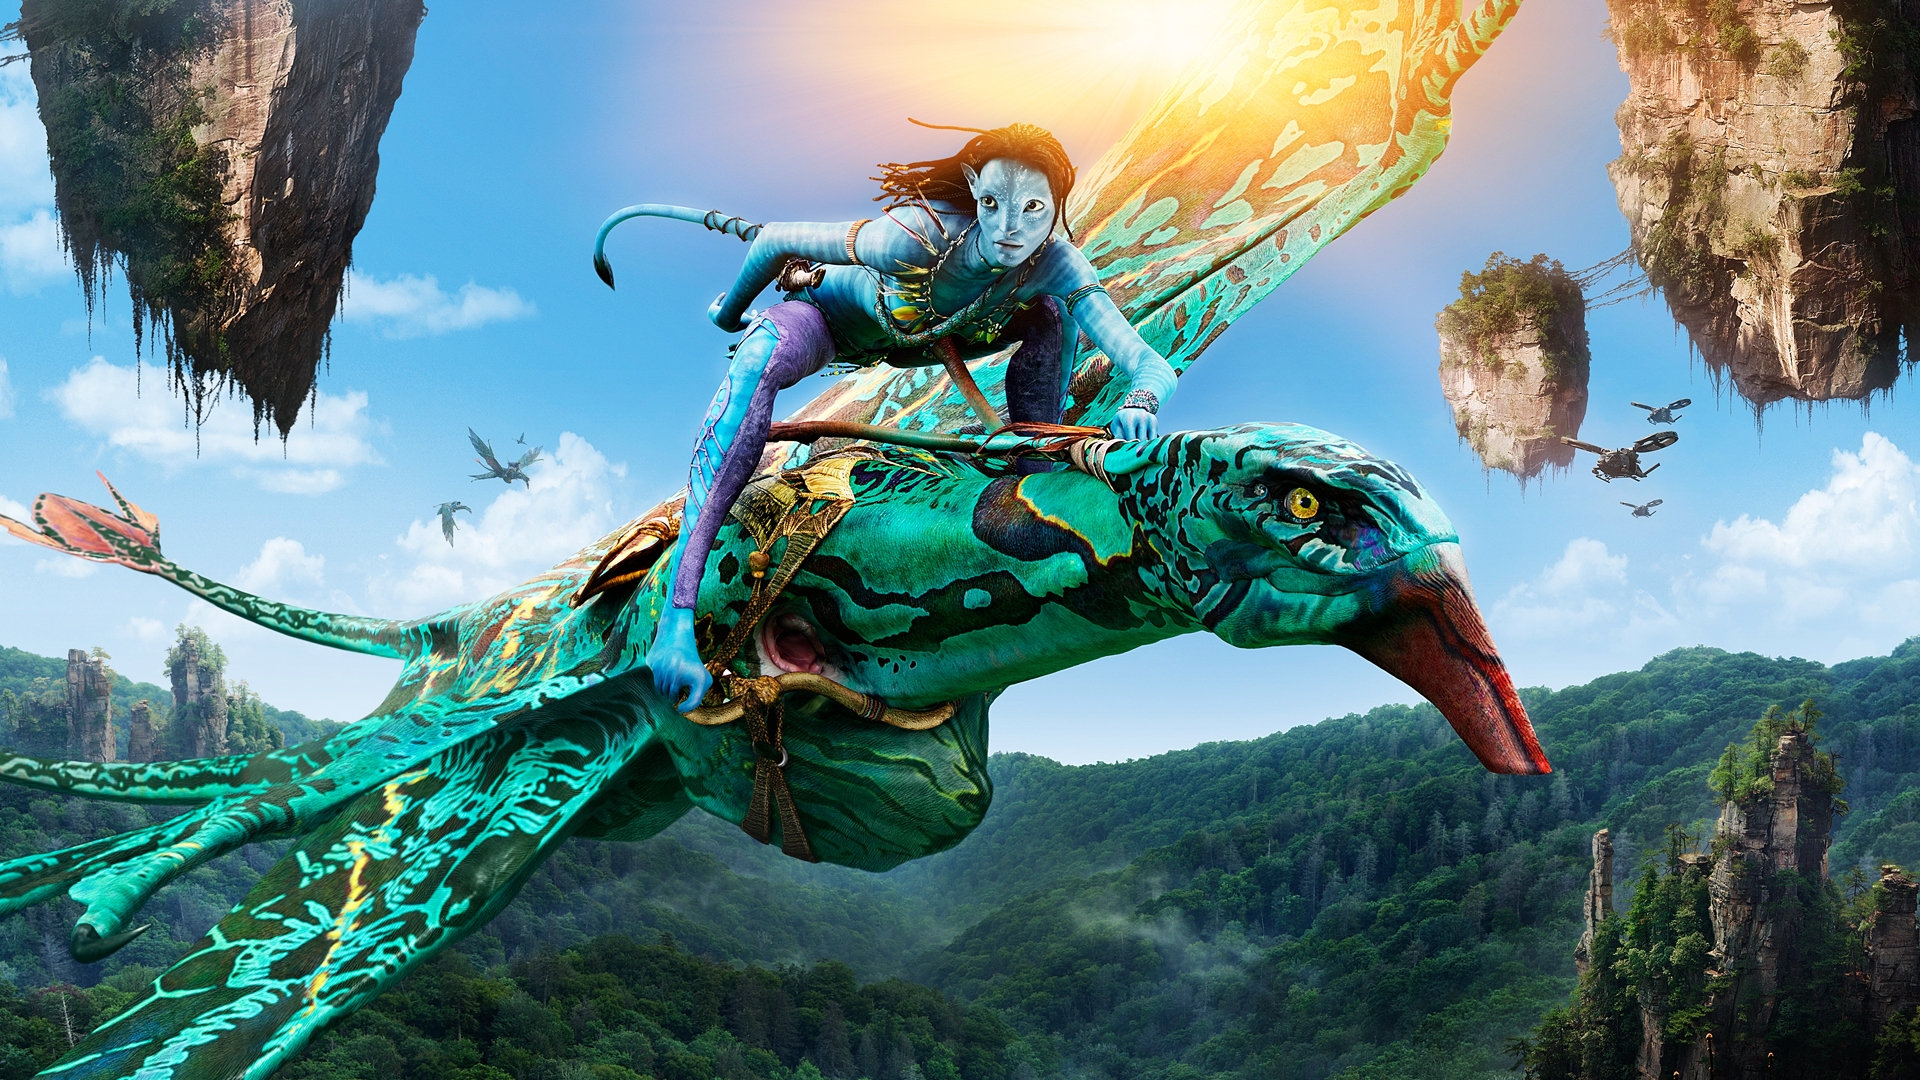 Avatar HD Wallpaper: Được thiết kế chất lượng cao và tinh tế, các hình nền Avatar HD chắc chắn sẽ khiến bạn mê mẩn. Không chỉ đem đến cái nhìn mới mẻ về bộ phim ấn tượng này, chúng còn tôn lên vẻ đẹp và sự nổi bật của chiếc điện thoại của bạn.